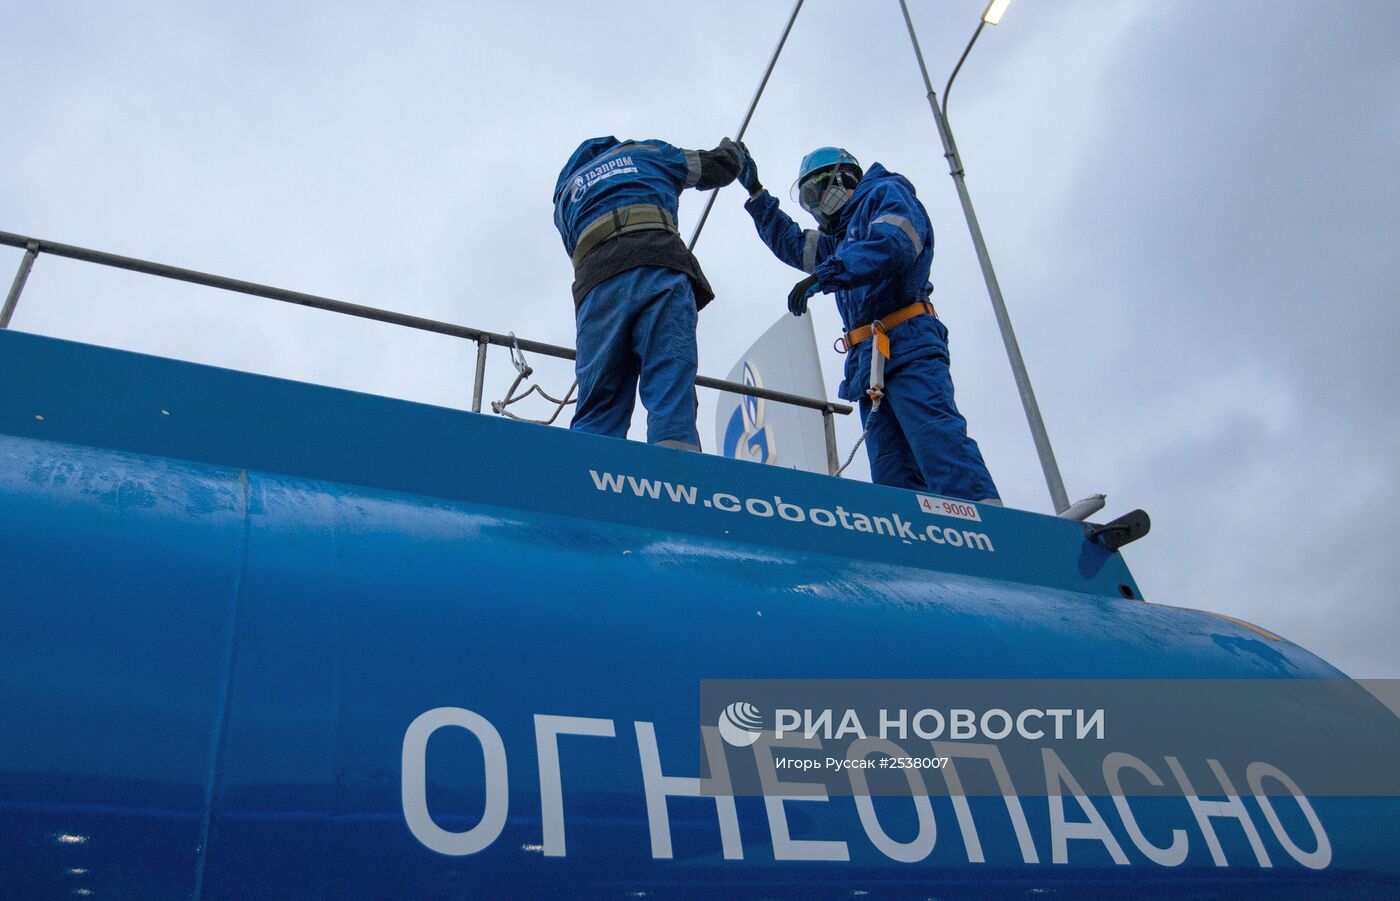 Работа заправочной станции "Газпромнефть" в Санкт-Петербурге